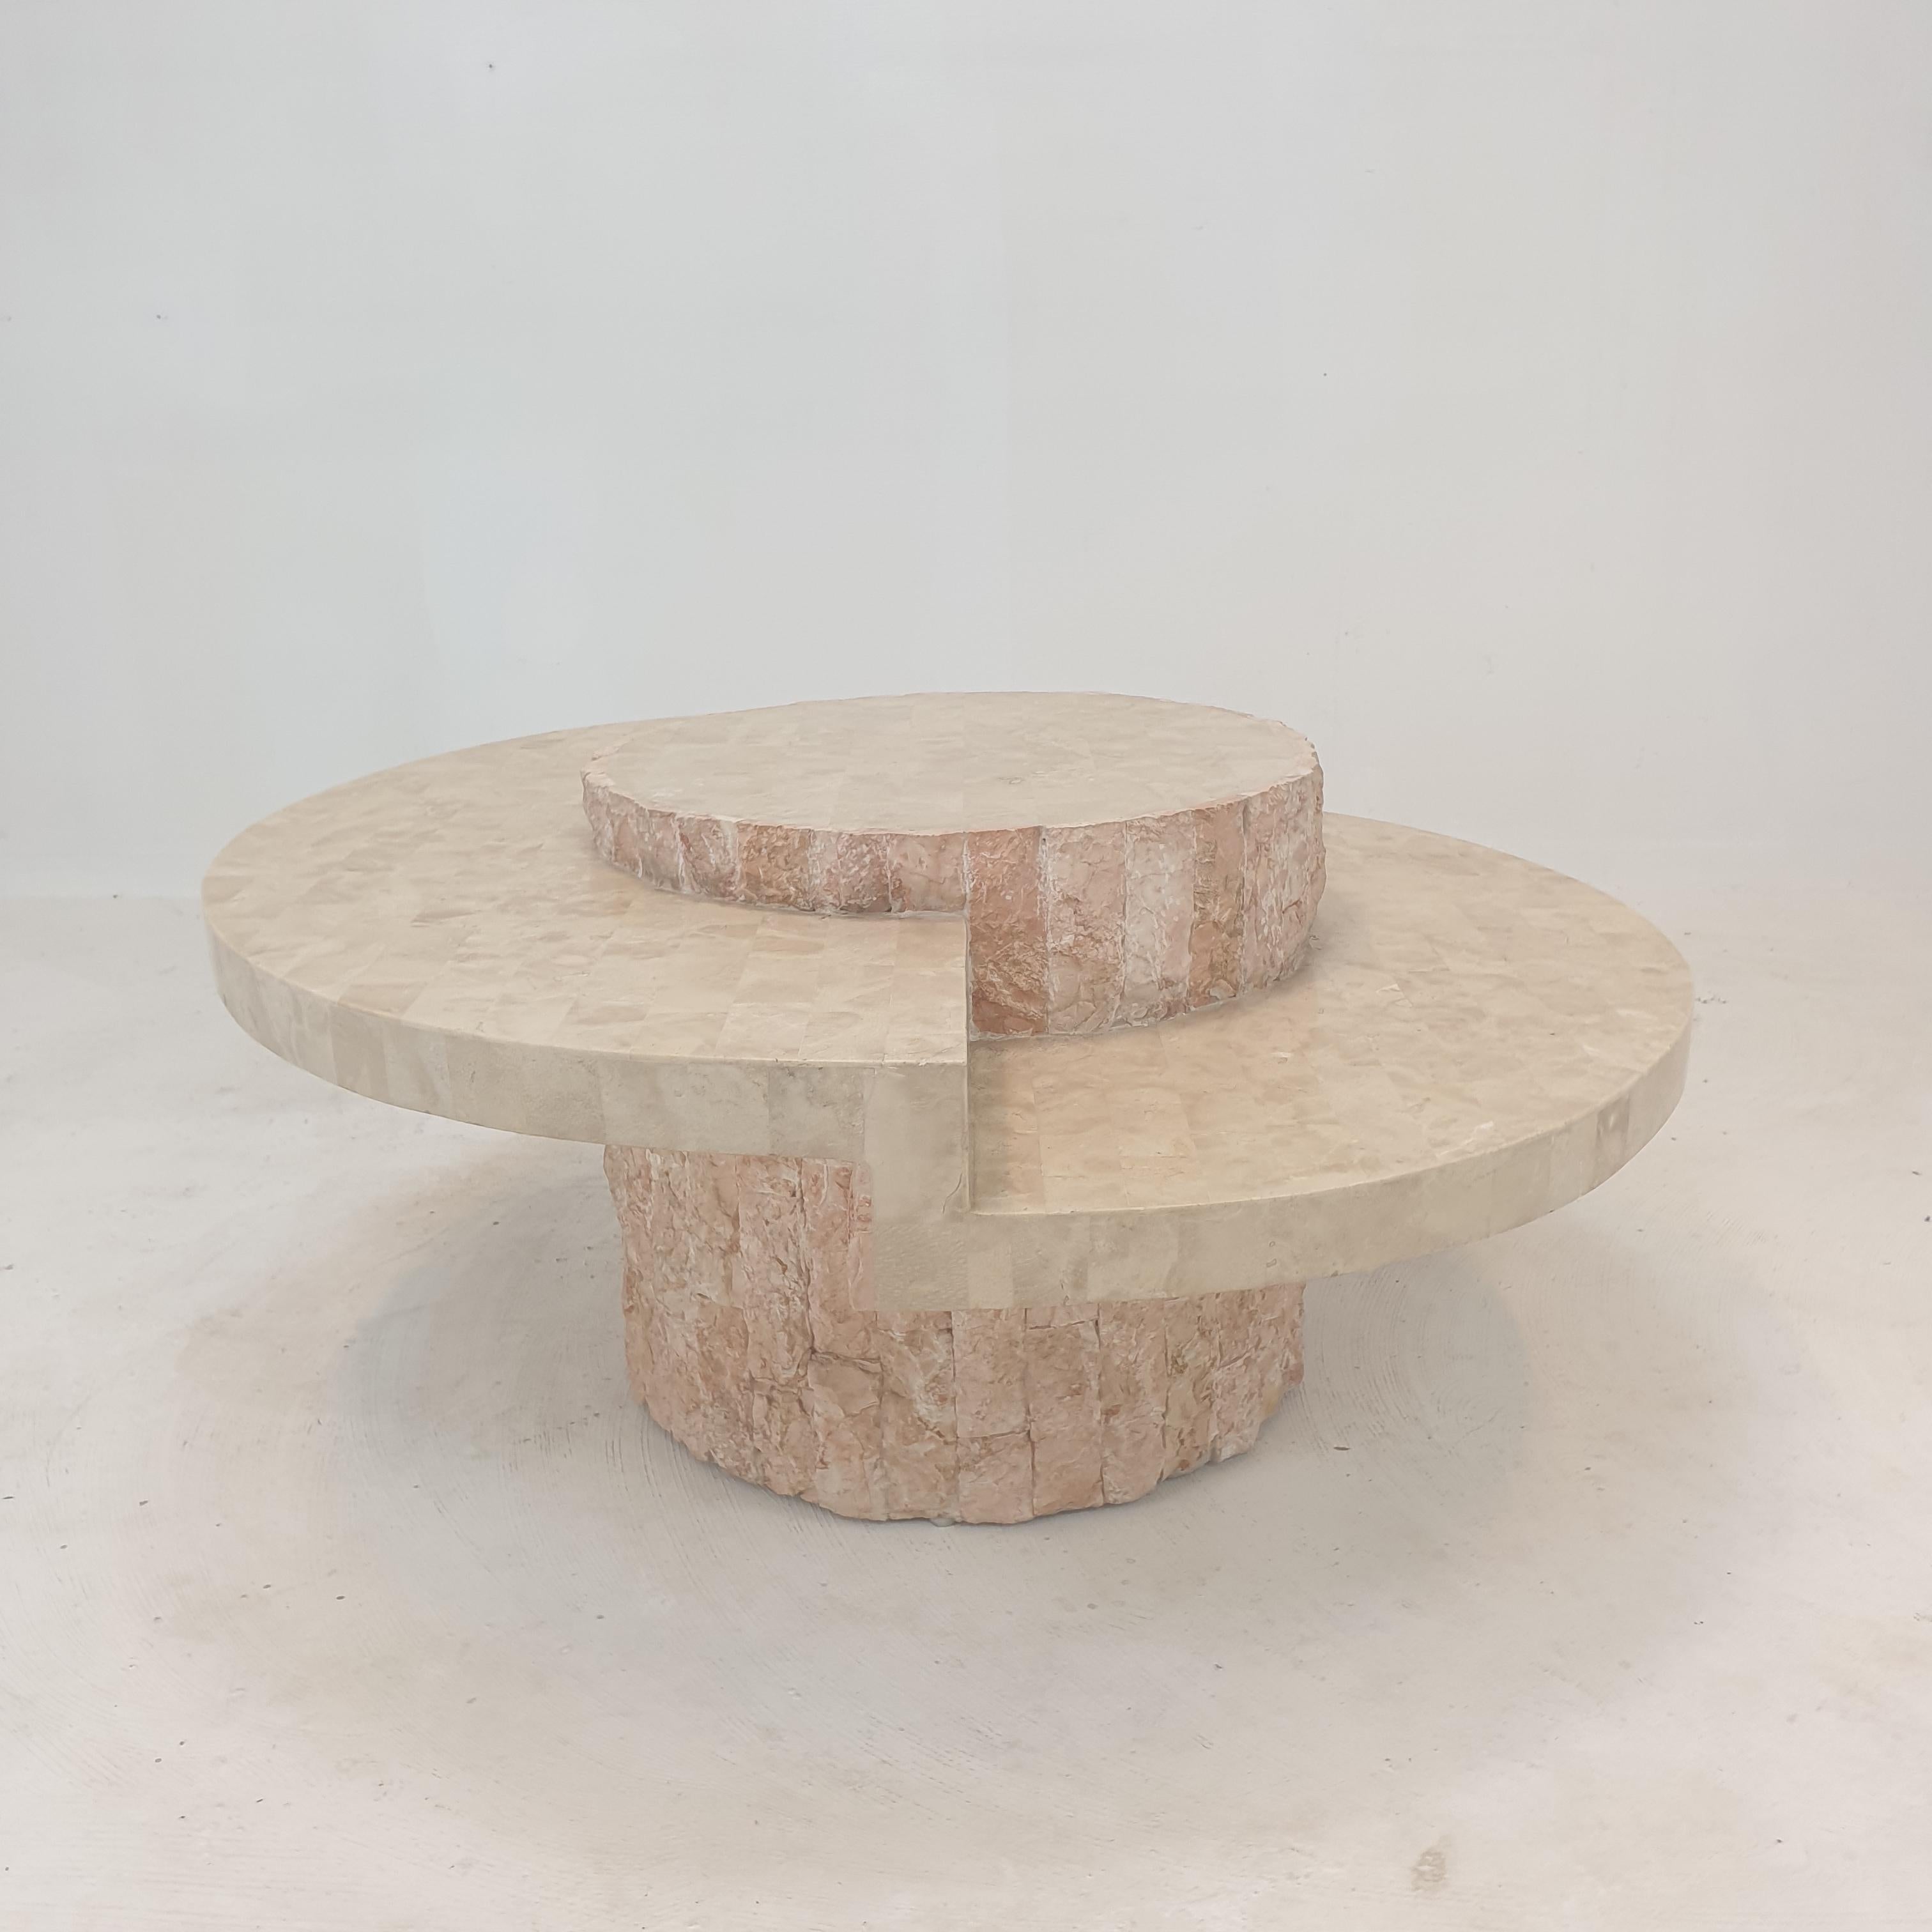 Sehr schöner Couchtisch oder Beistelltisch von Magnussen Ponte, 1980er Jahre.

Dieser atemberaubende Tisch ist aus dem grobkantigen Mactan-Stein oder Fossil-Stein mit Ziegelmotiv gefertigt.
Das Gewicht beträgt ca. 25 kg (55 lbs).

Wir arbeiten